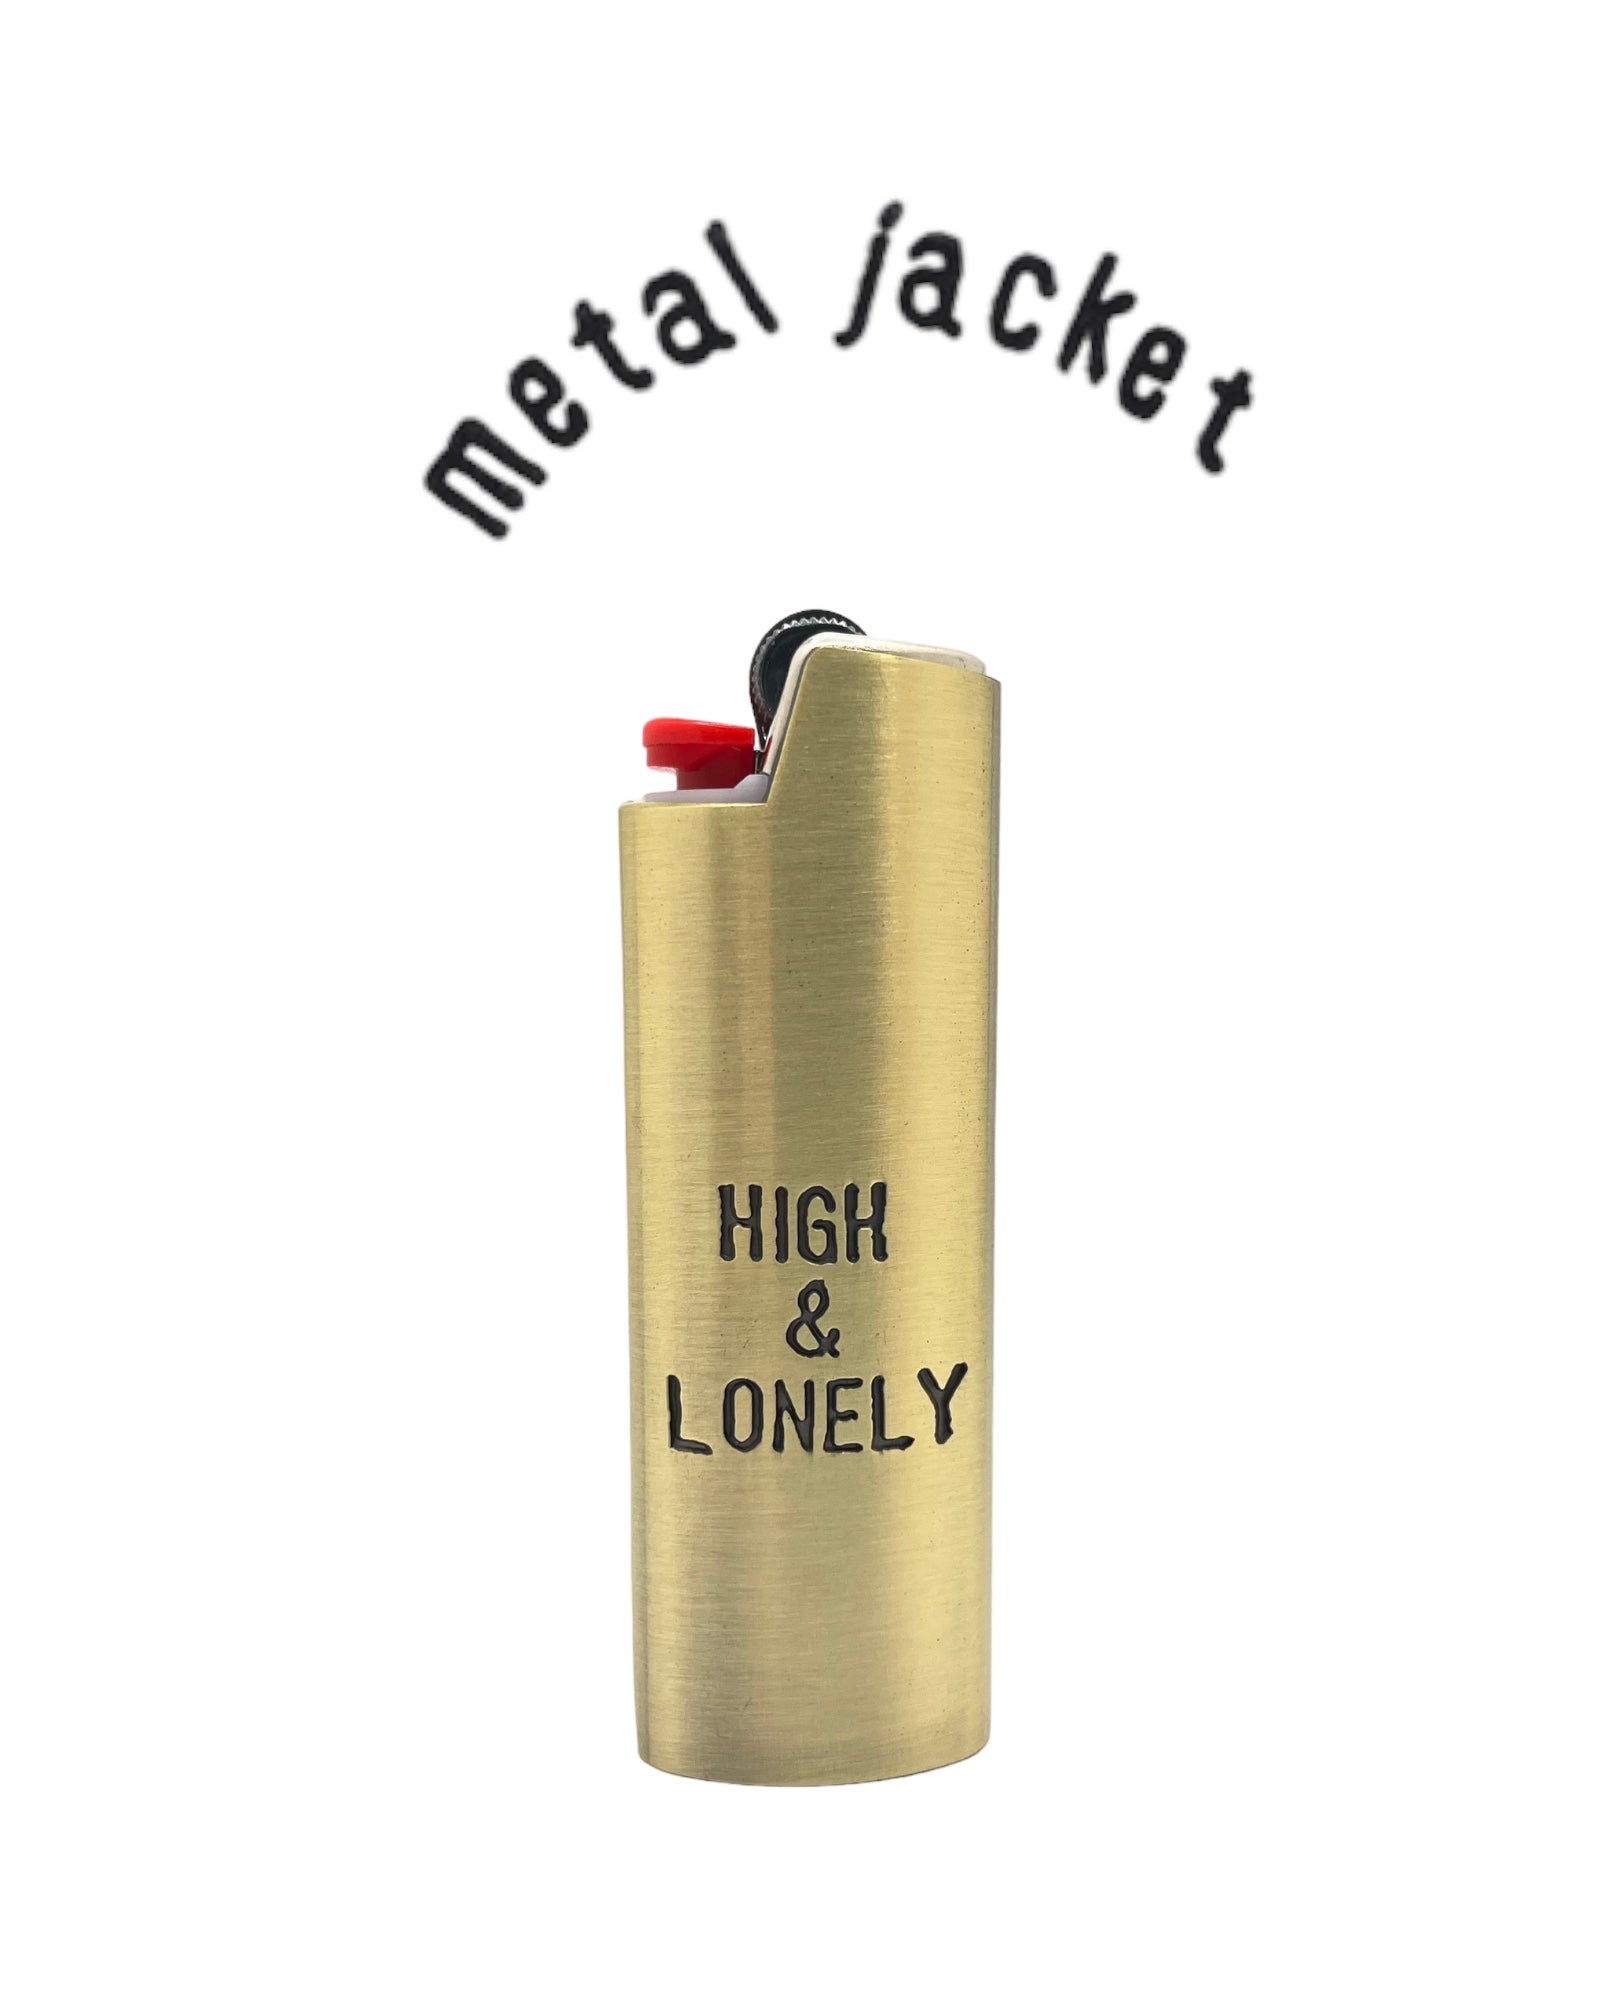 metal bic lighter case